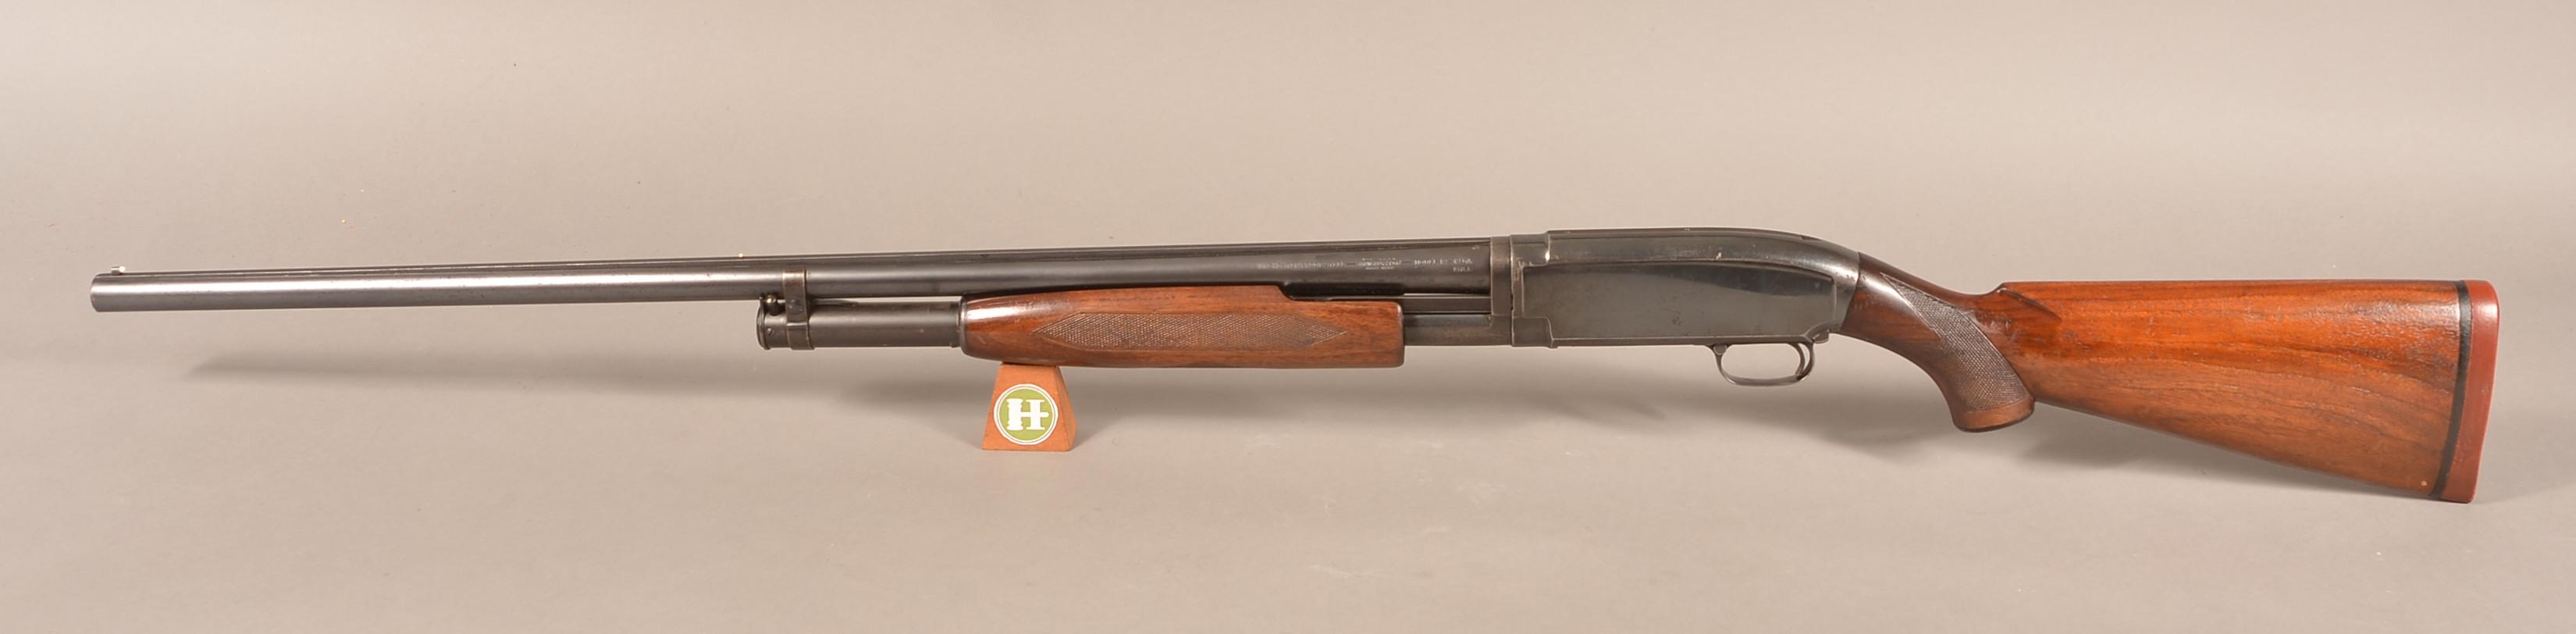 Winchester mod. 12 12ga. Standard Trap Shotgun